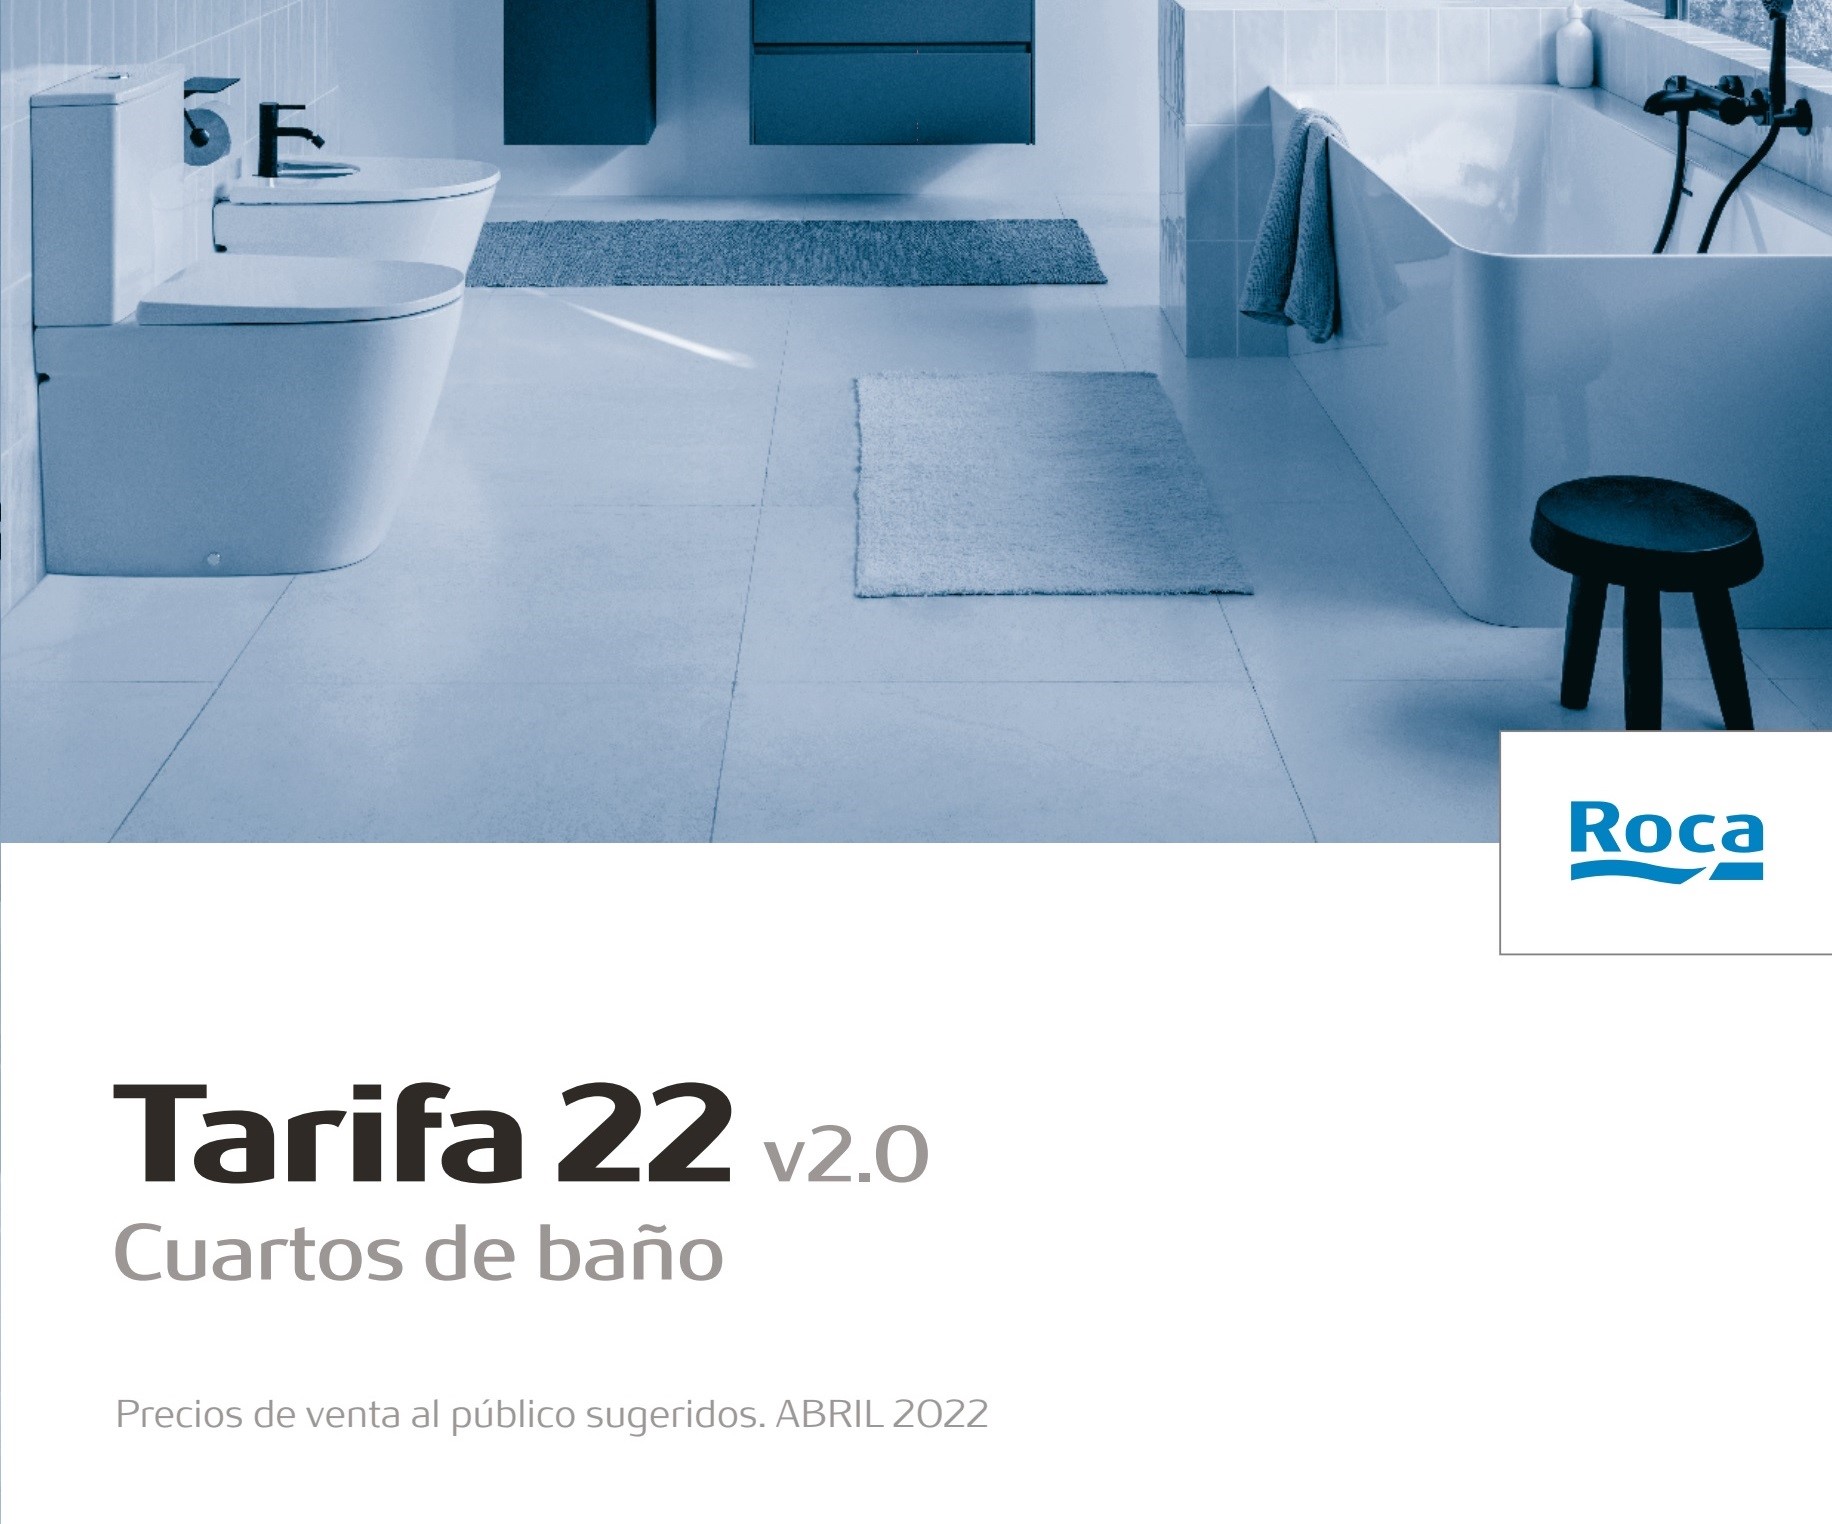 Tarifa Roca 2022